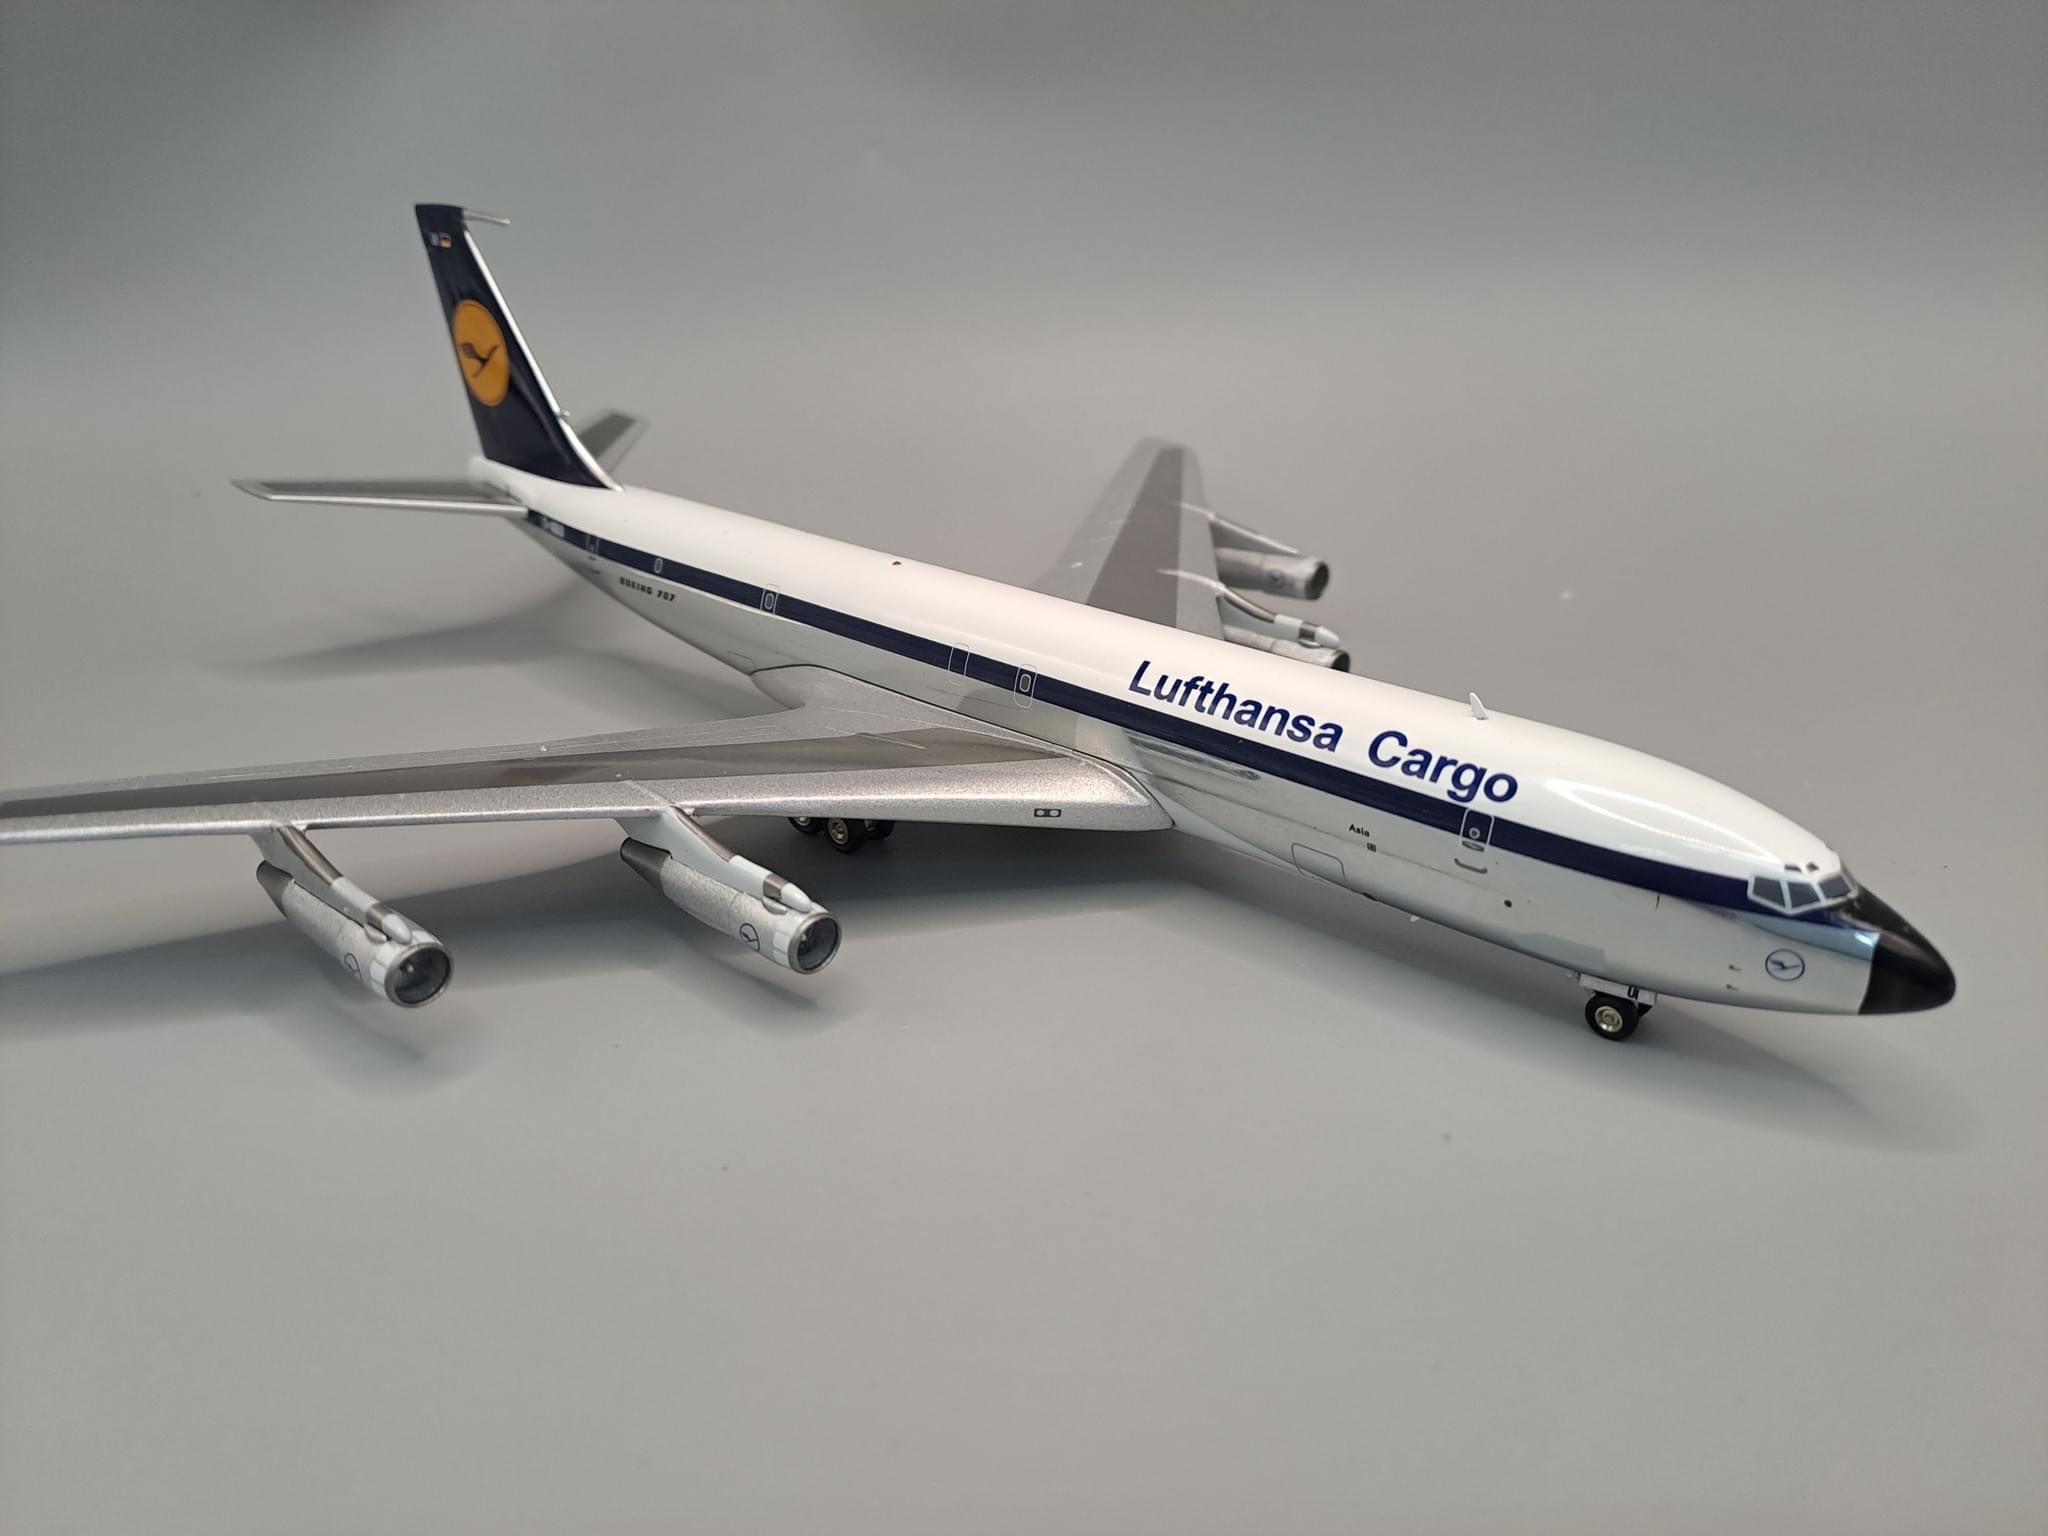 Lufthansa Cargo / Boeing 707-330C / D-ABUI / JF-707-3-006P / 1:200 elaviadormodels